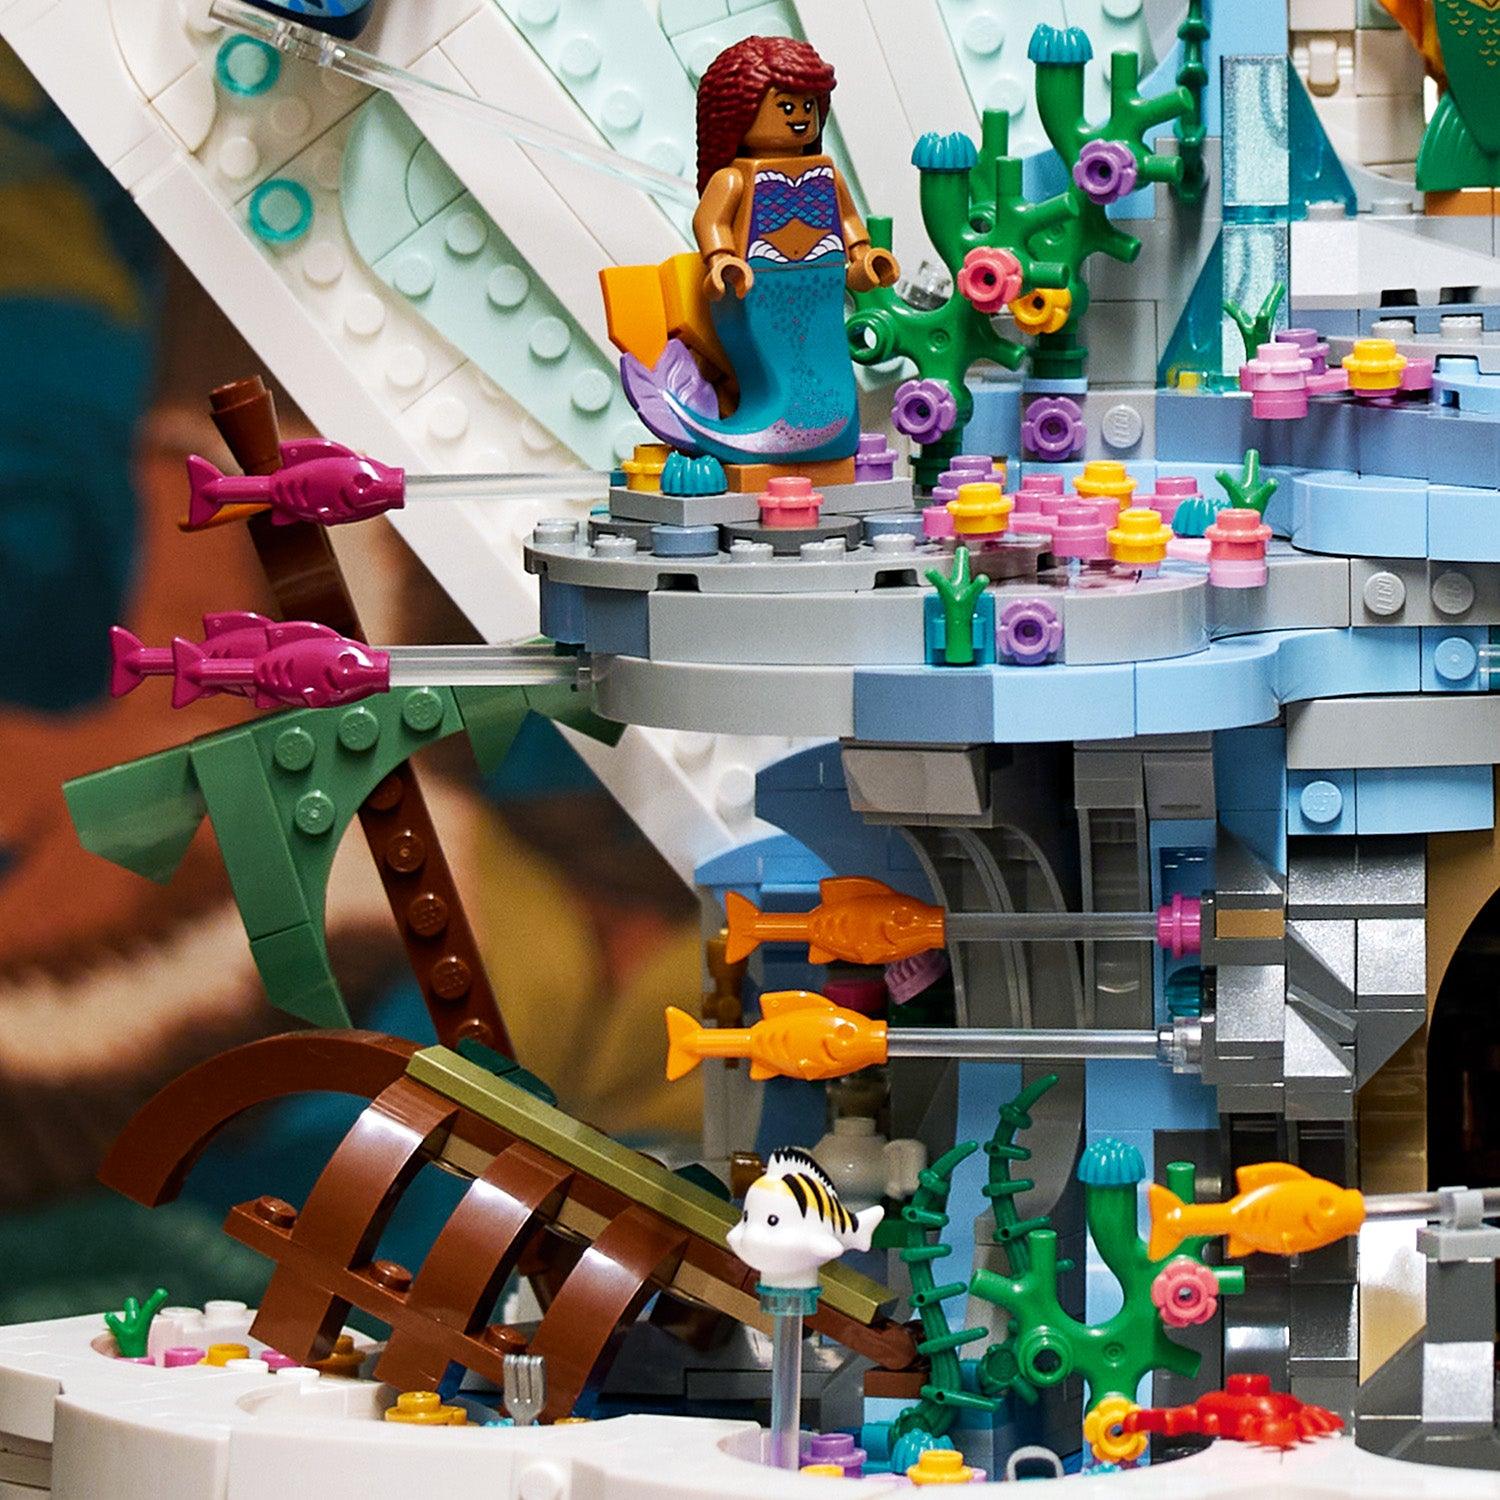 LEGO The Little Mermaid Royal Clamshell 43225 Disney LEGO DISNEY @ 2TTOYS LEGO €. 164.99